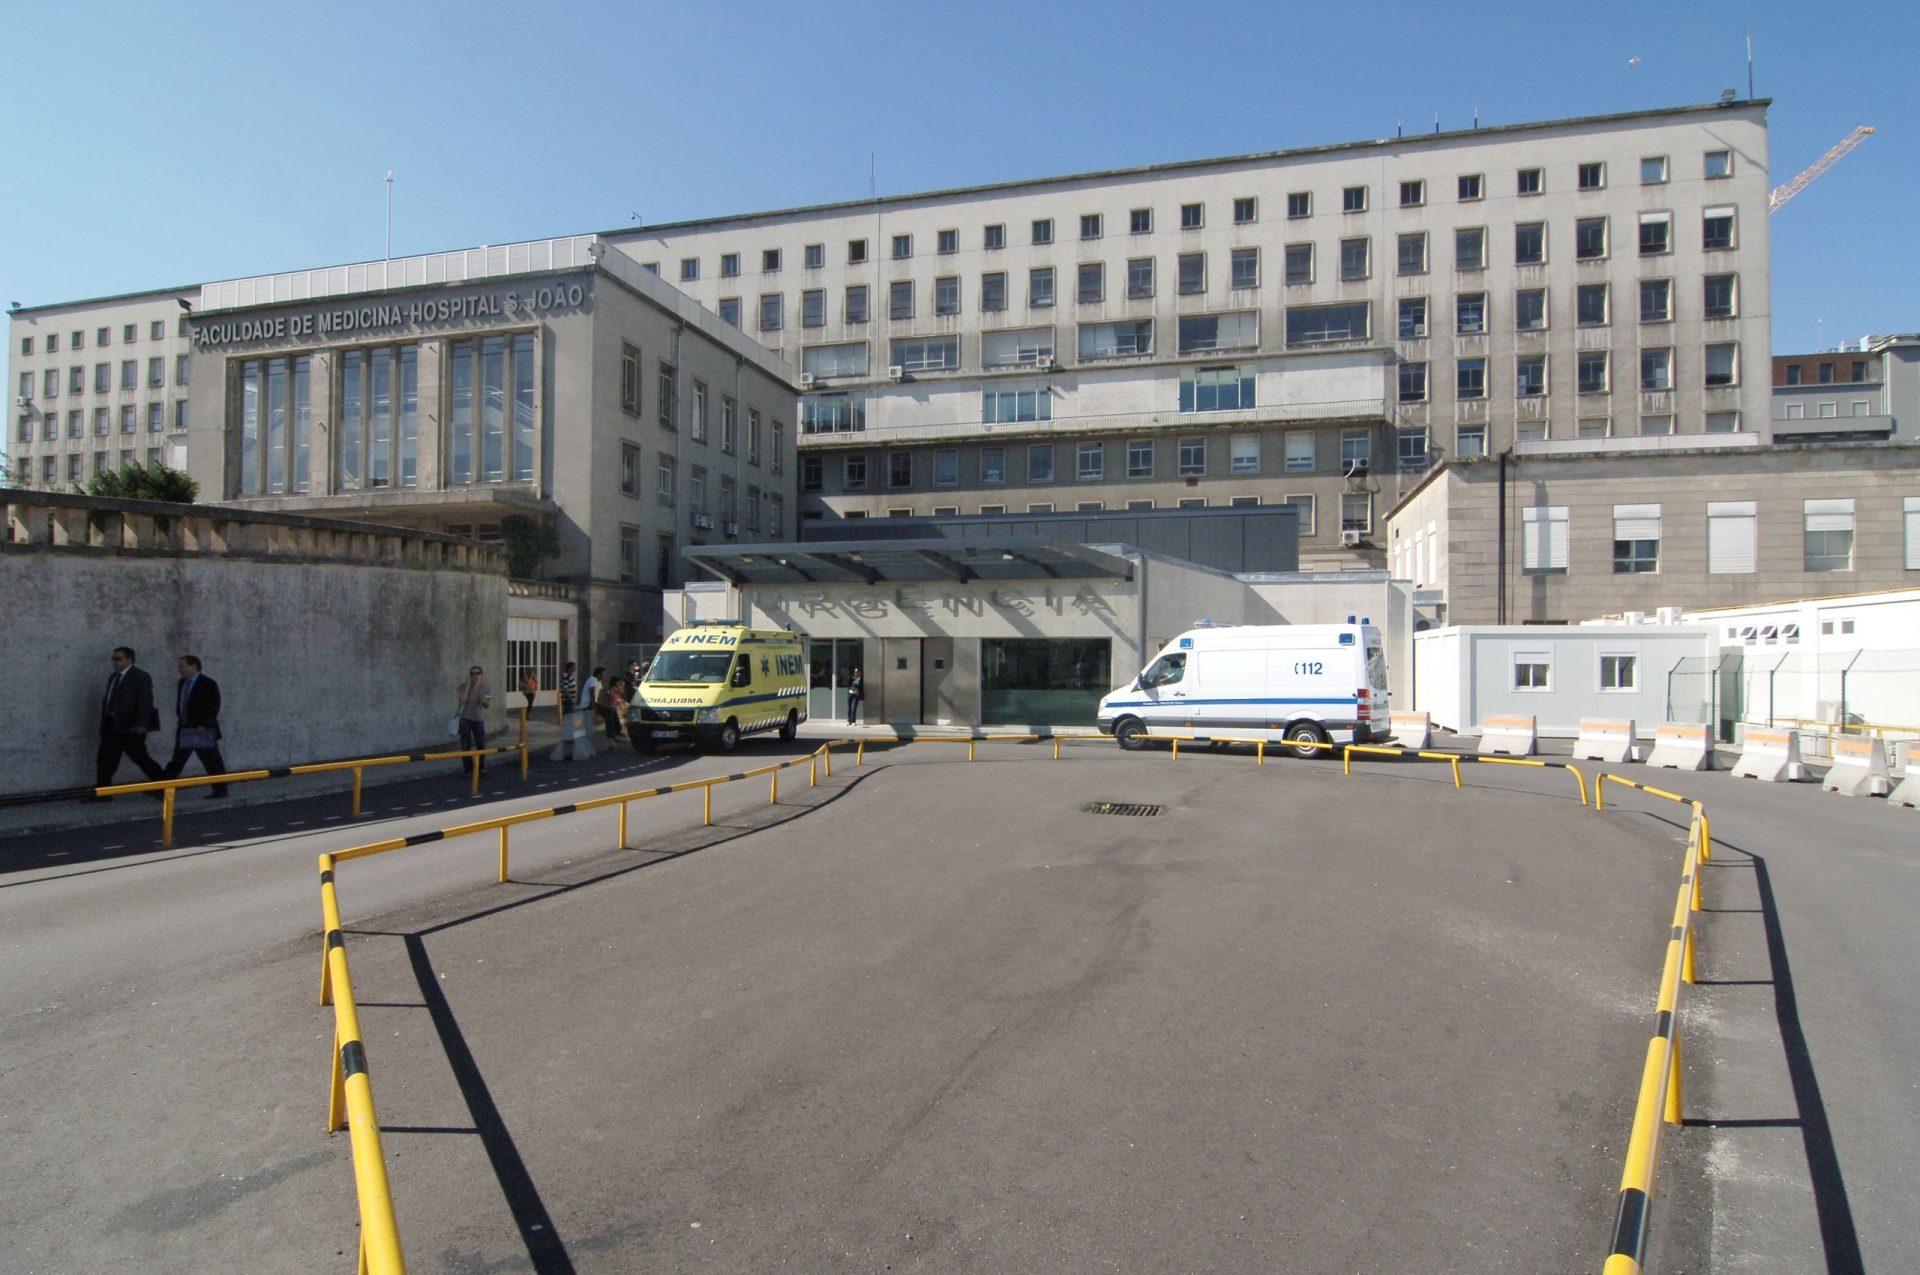 Arranca hoje construção da nova ala pediátrica do Hospital de S. João, no Porto